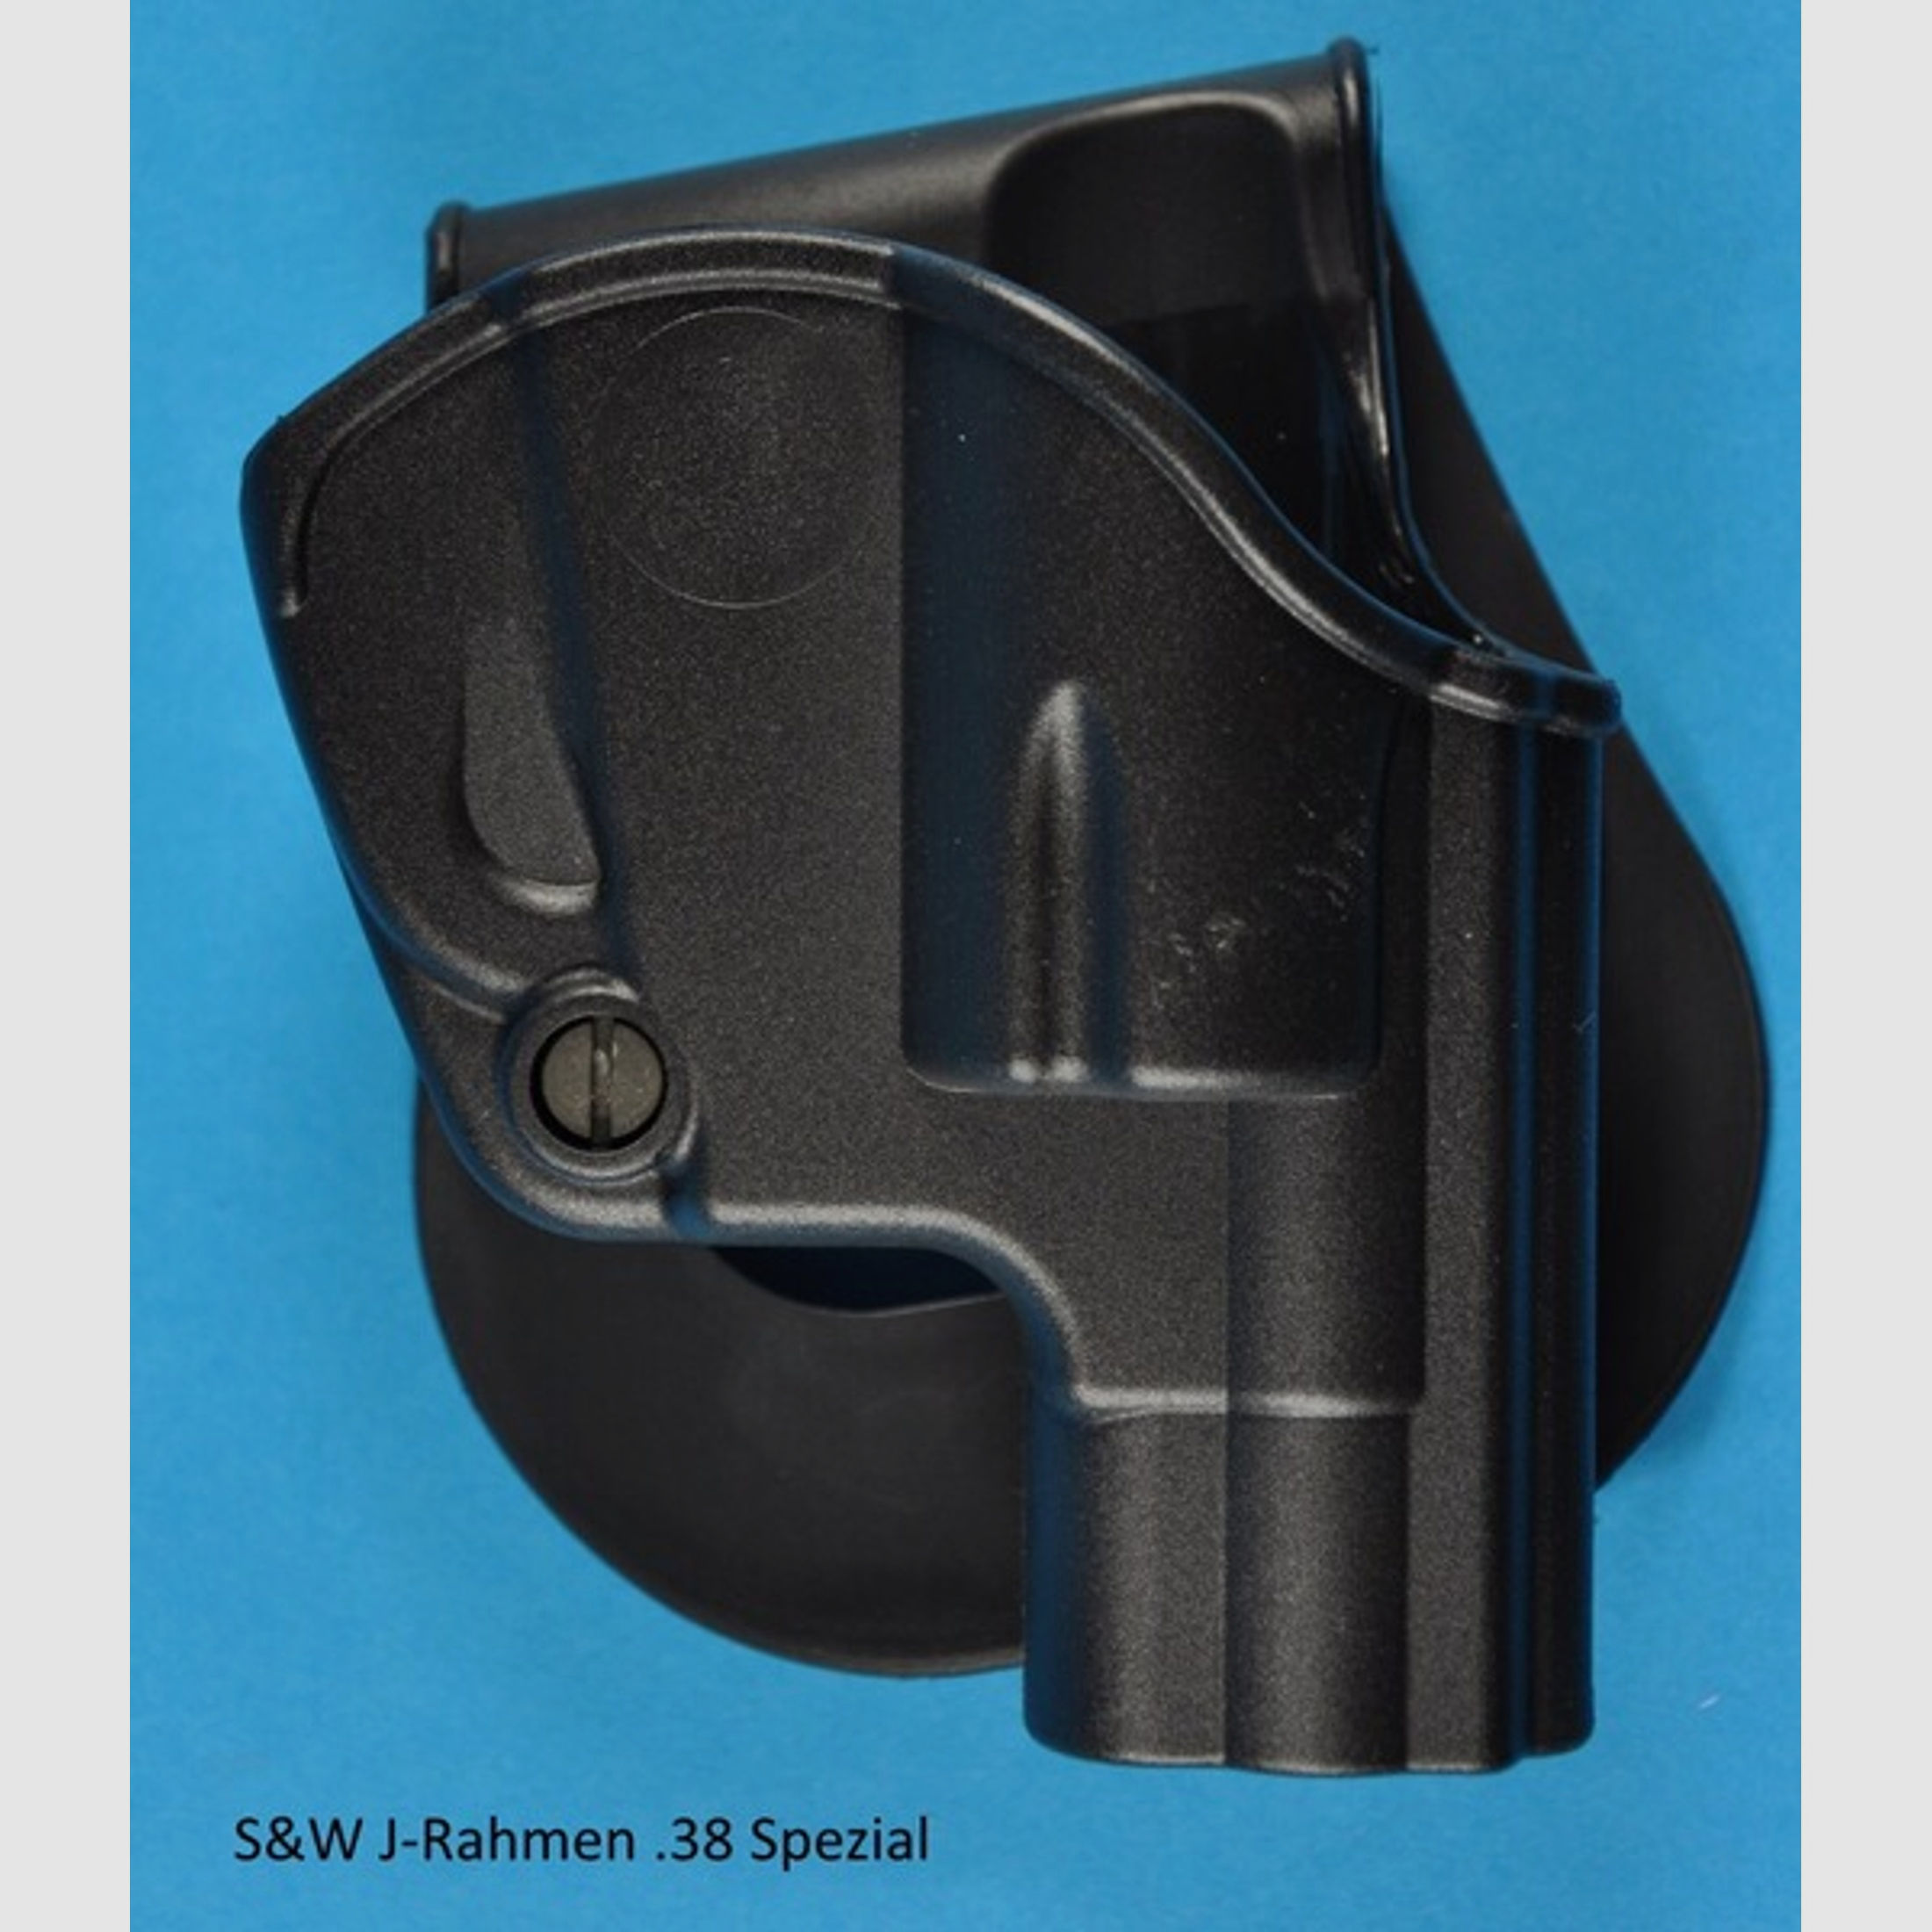 schwenkbares Paddel-Holster für S&W Revolver, Weihrauch, Erma von IMI-Defense